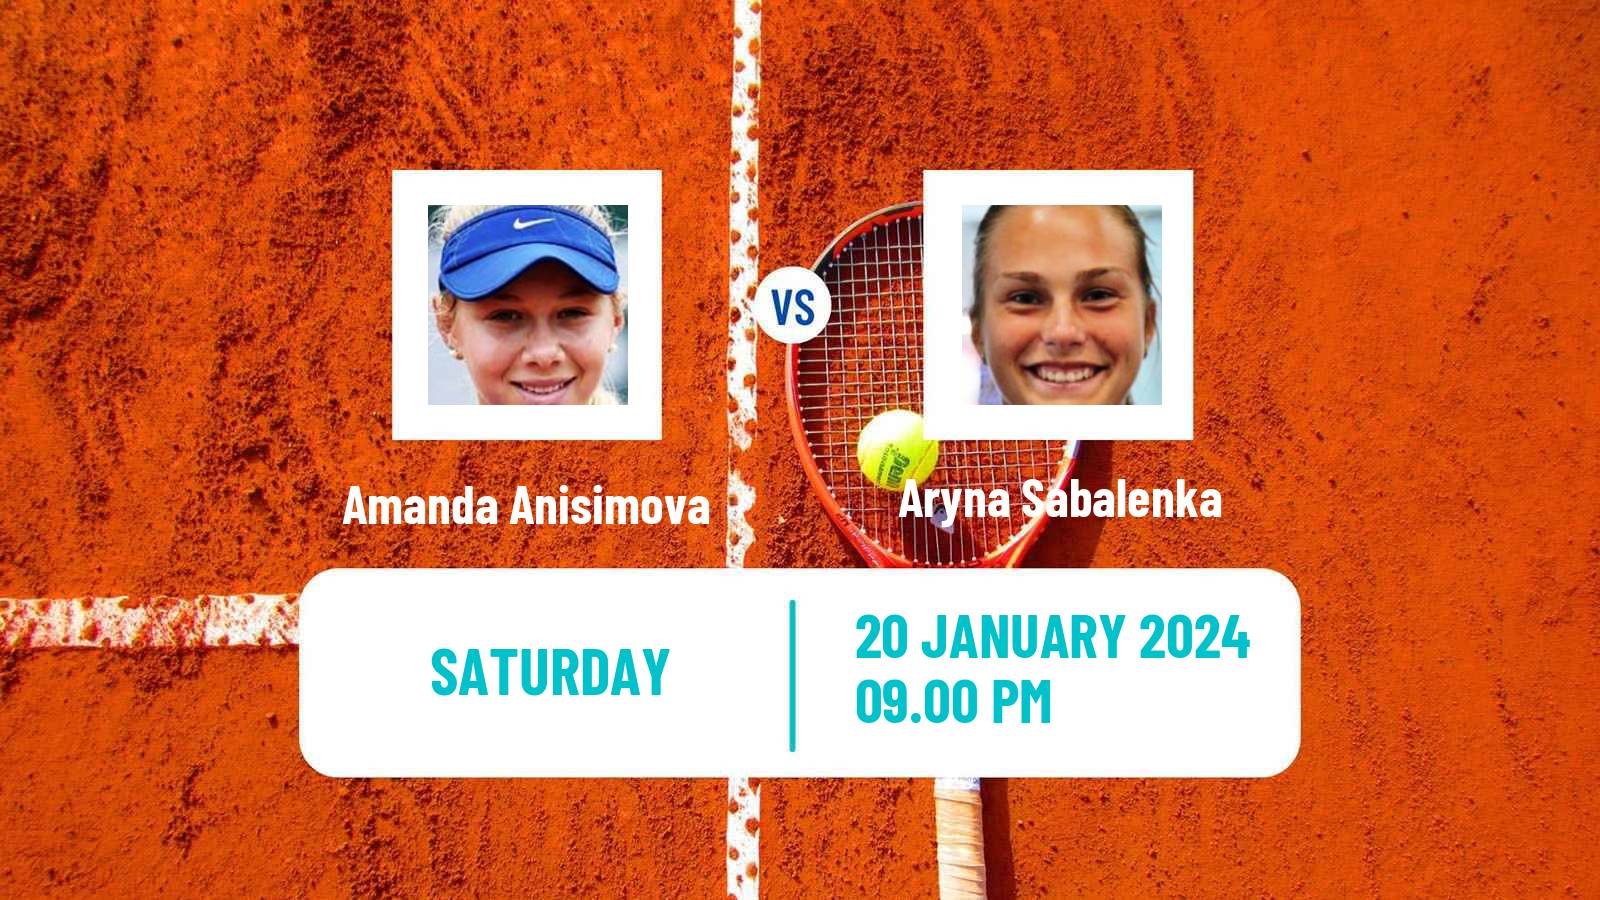 Tennis WTA Australian Open Amanda Anisimova - Aryna Sabalenka